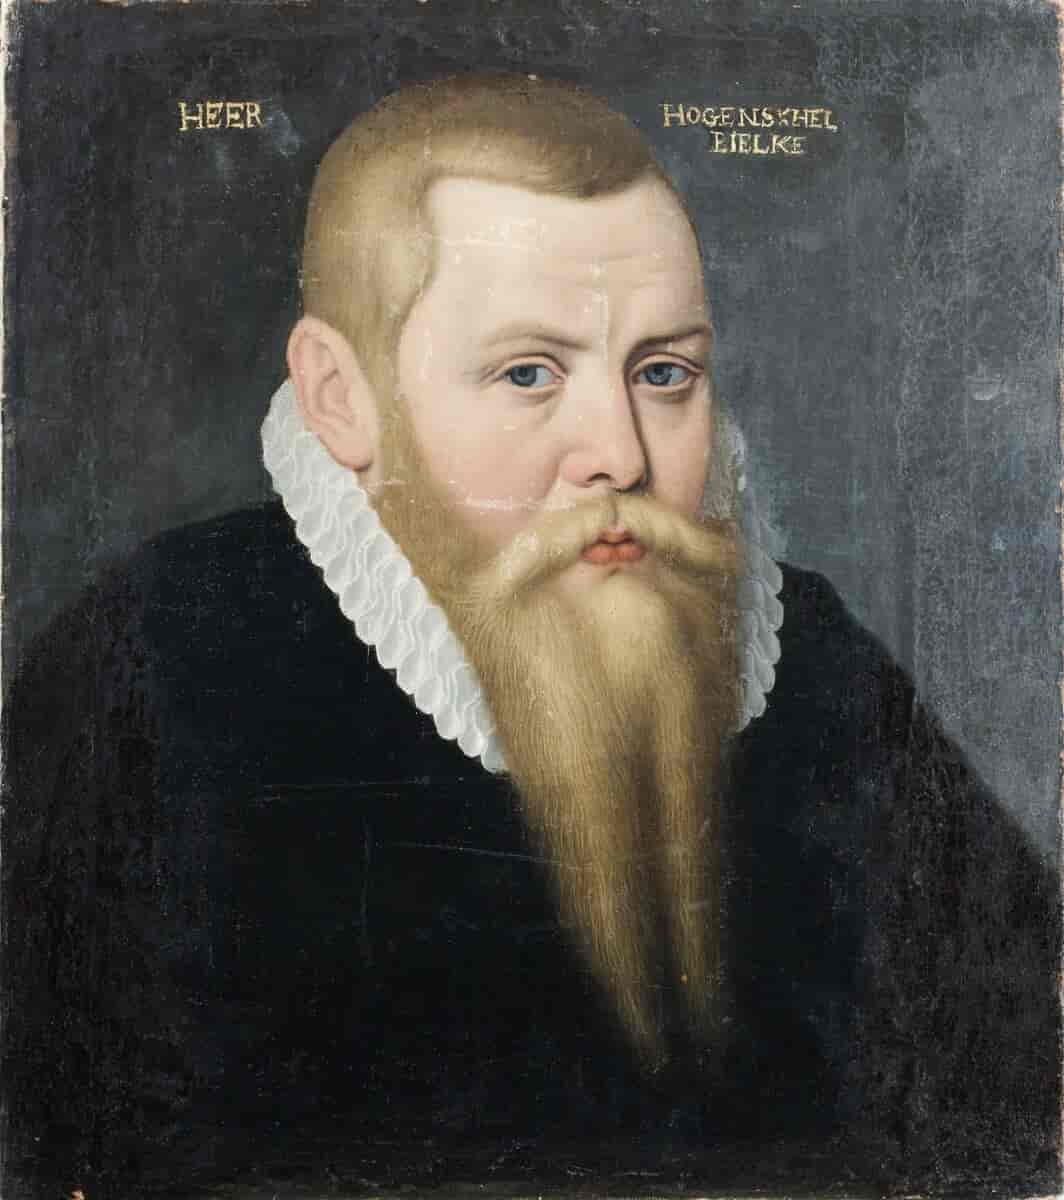 Portræt af den svenske adelsmand Hogenskild Bielke.